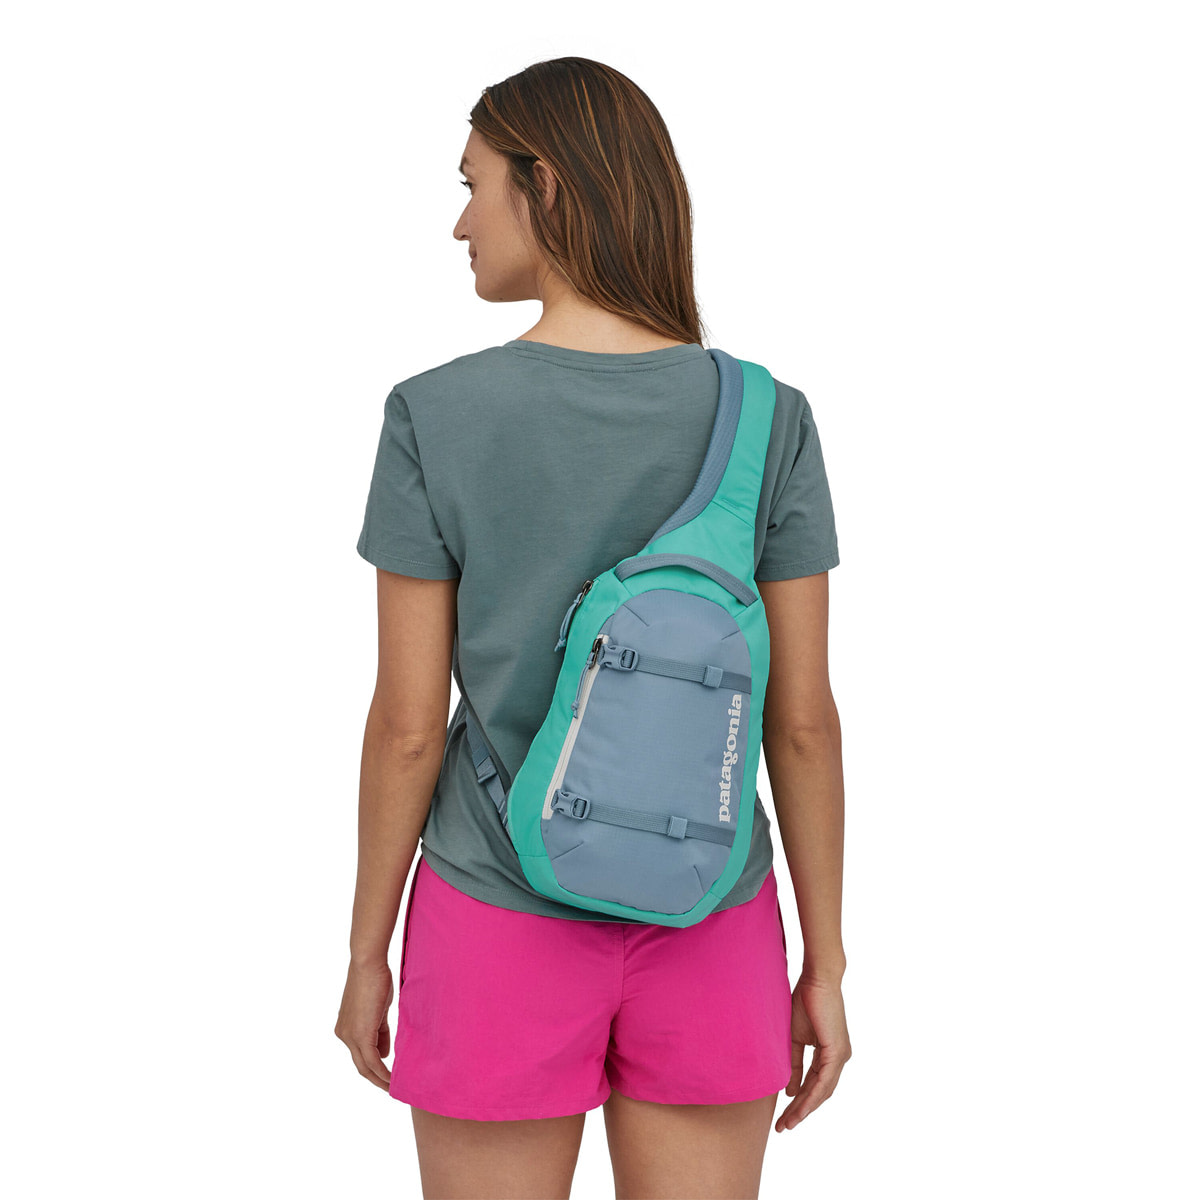 Best Sling Backpack for Women